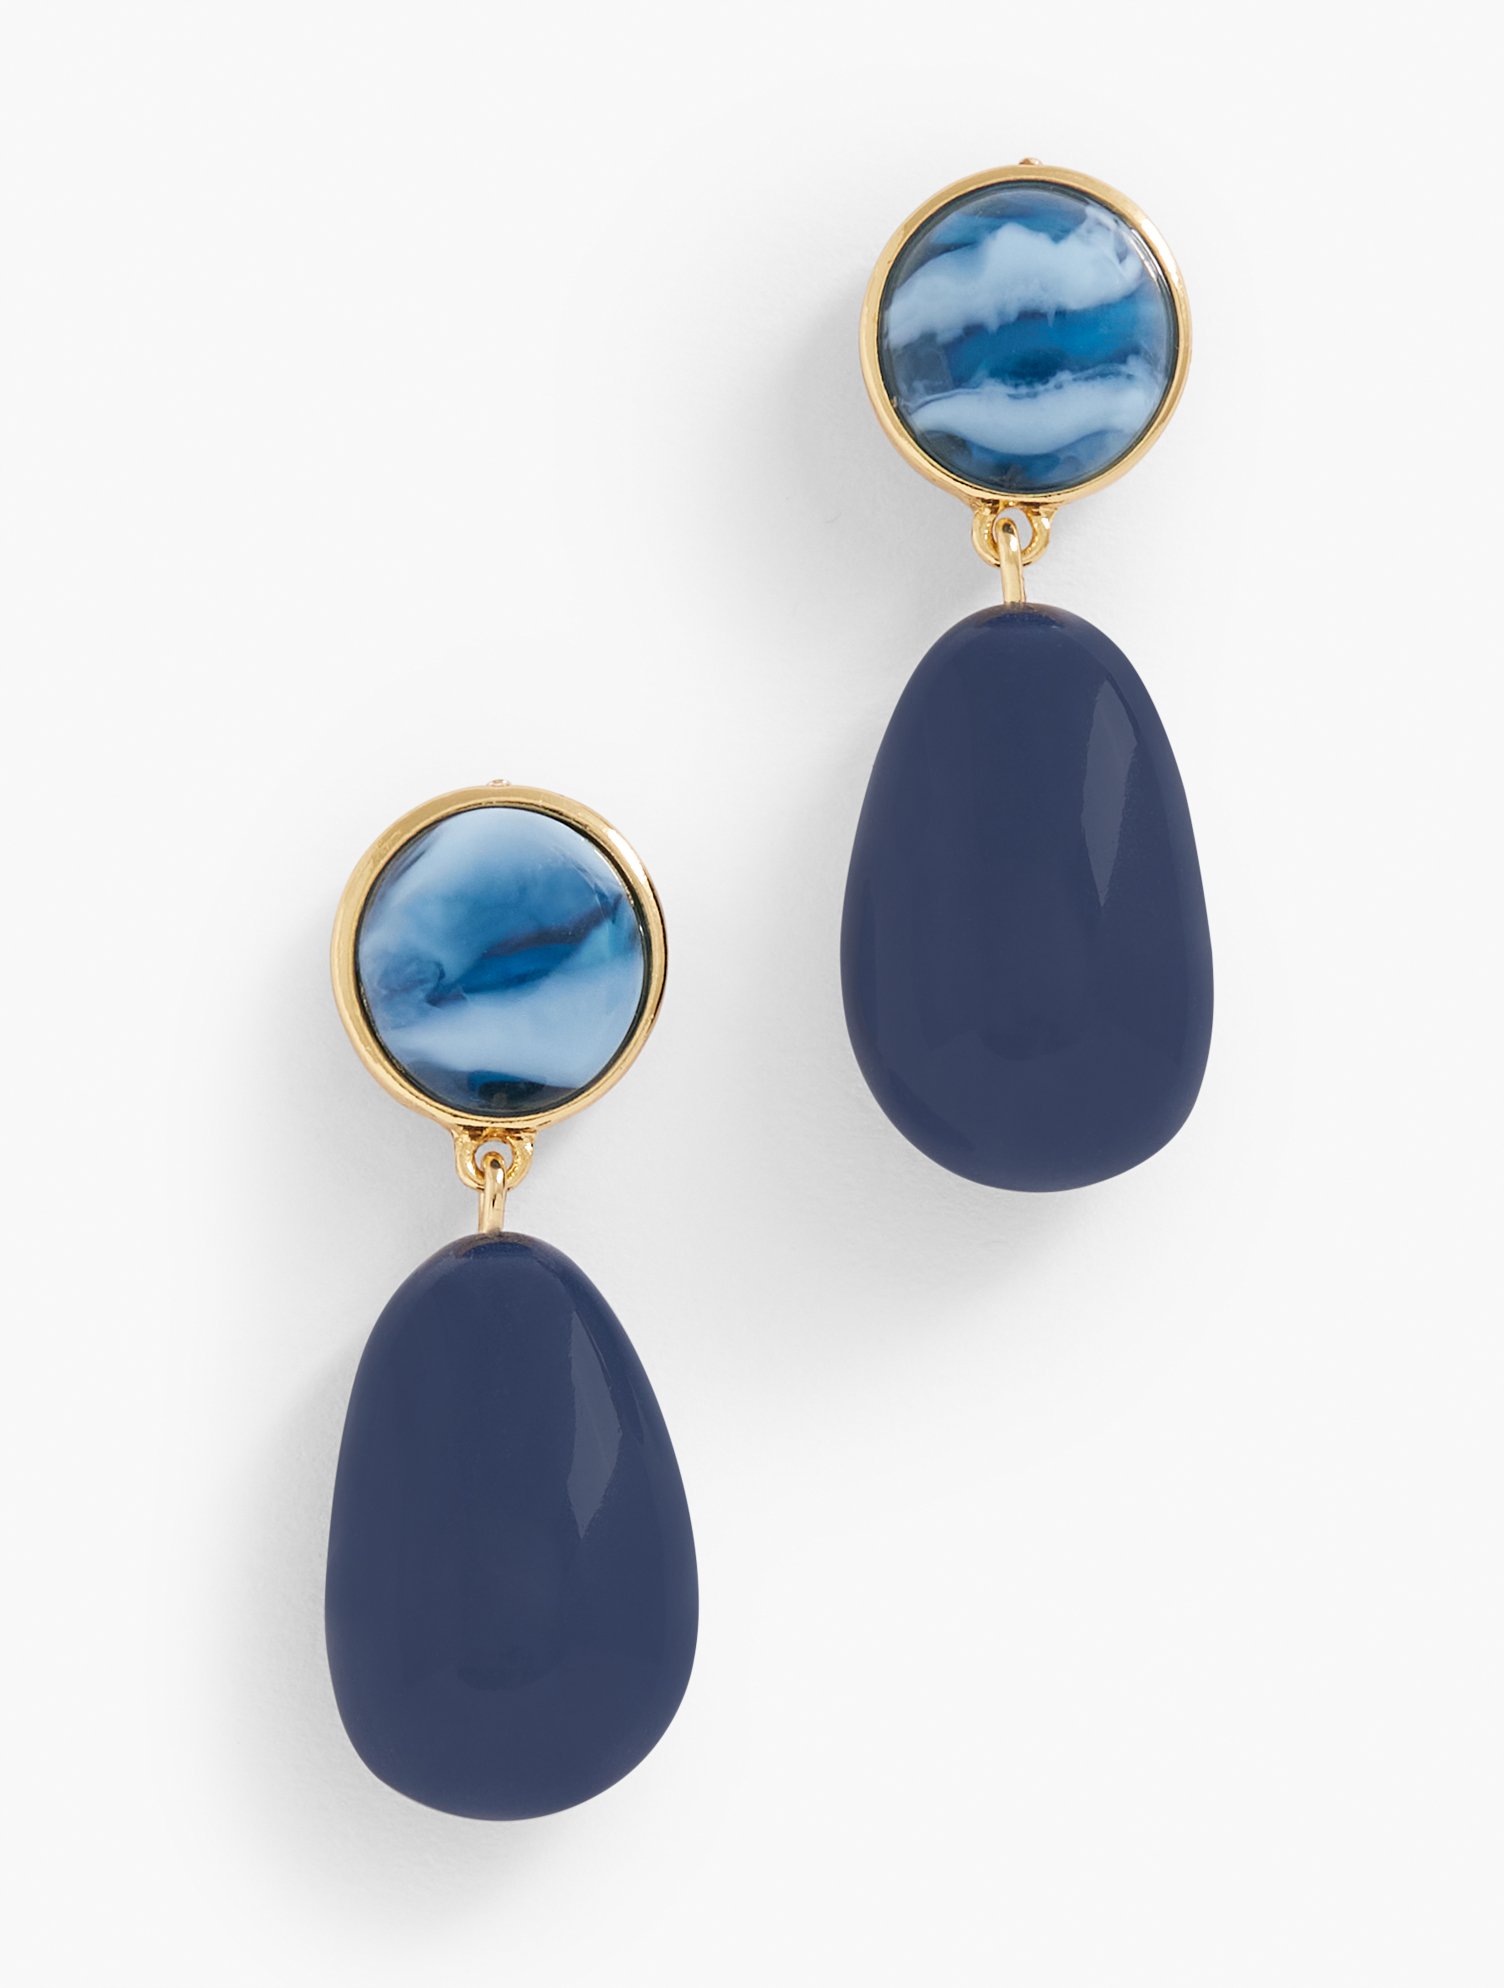 Talbots Refined Drop Earrings - Capri Blue/gold - 001